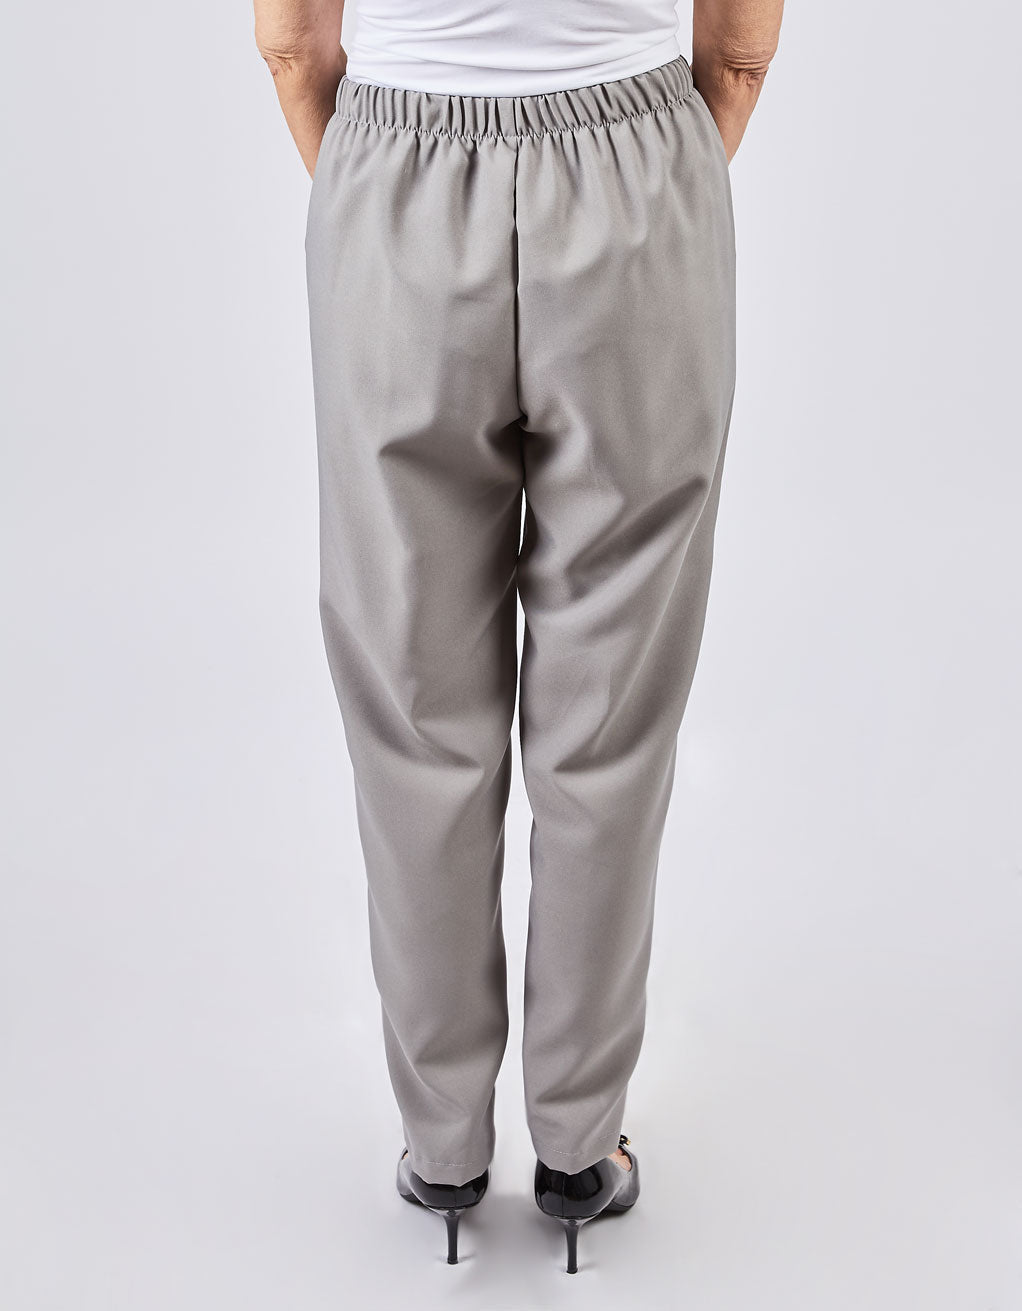 Pantalon gris perle adaptés, pour dame | DT FP62525 | EZ